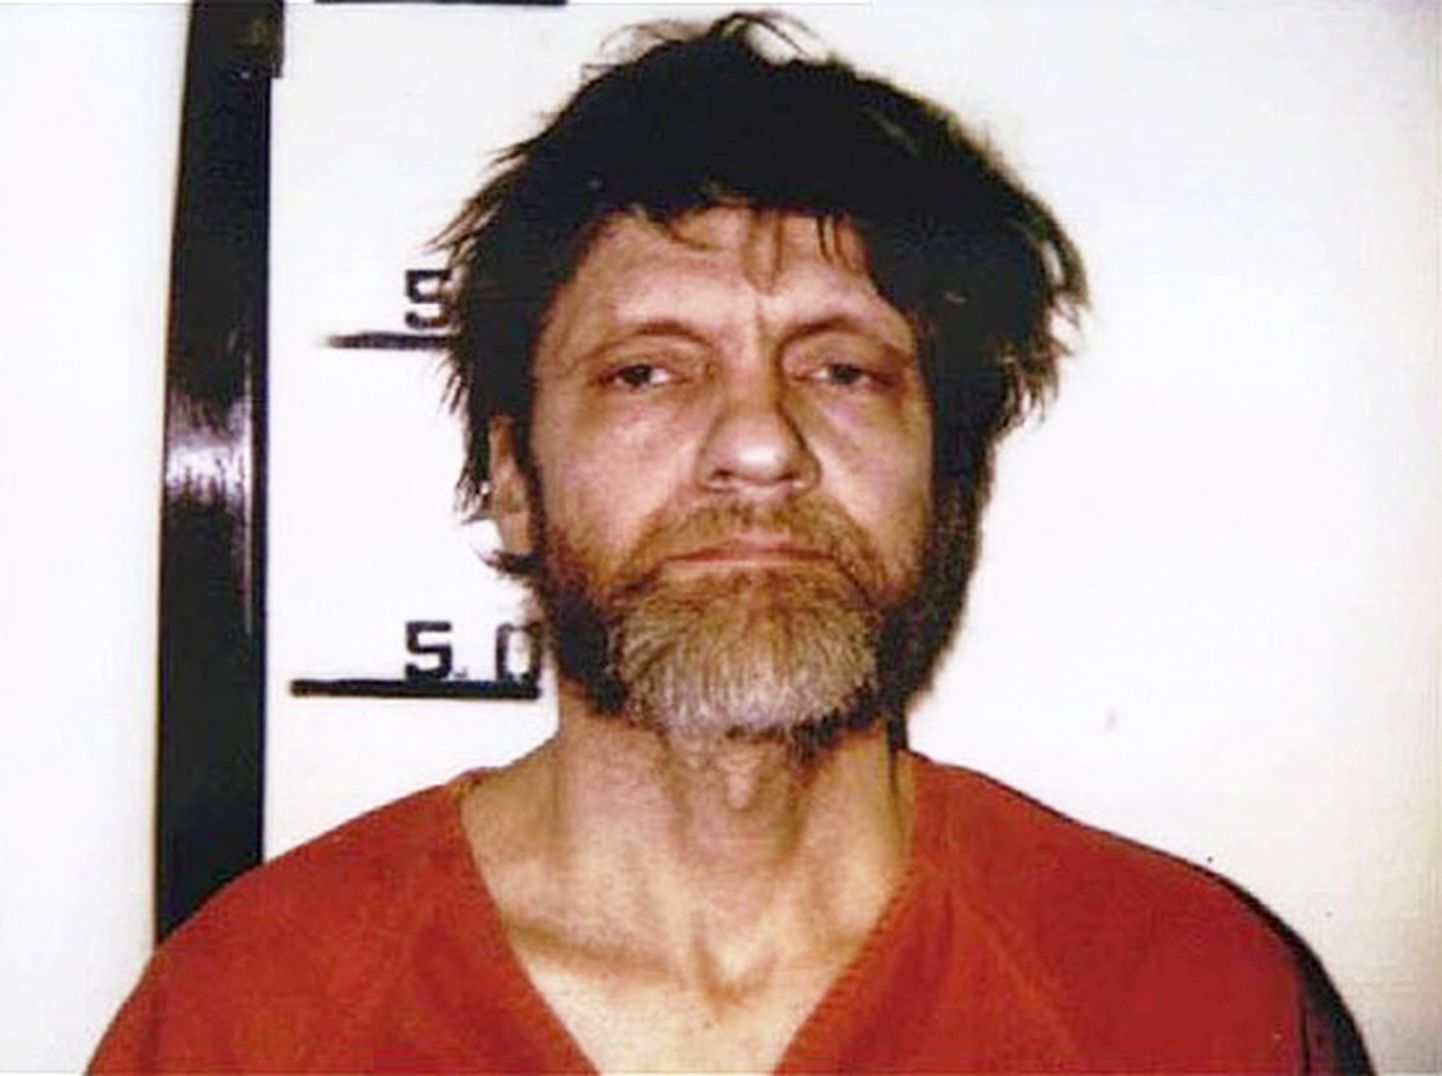 Teds Kačinskis īsi pēc viņa notveršanas 1996. gadā.